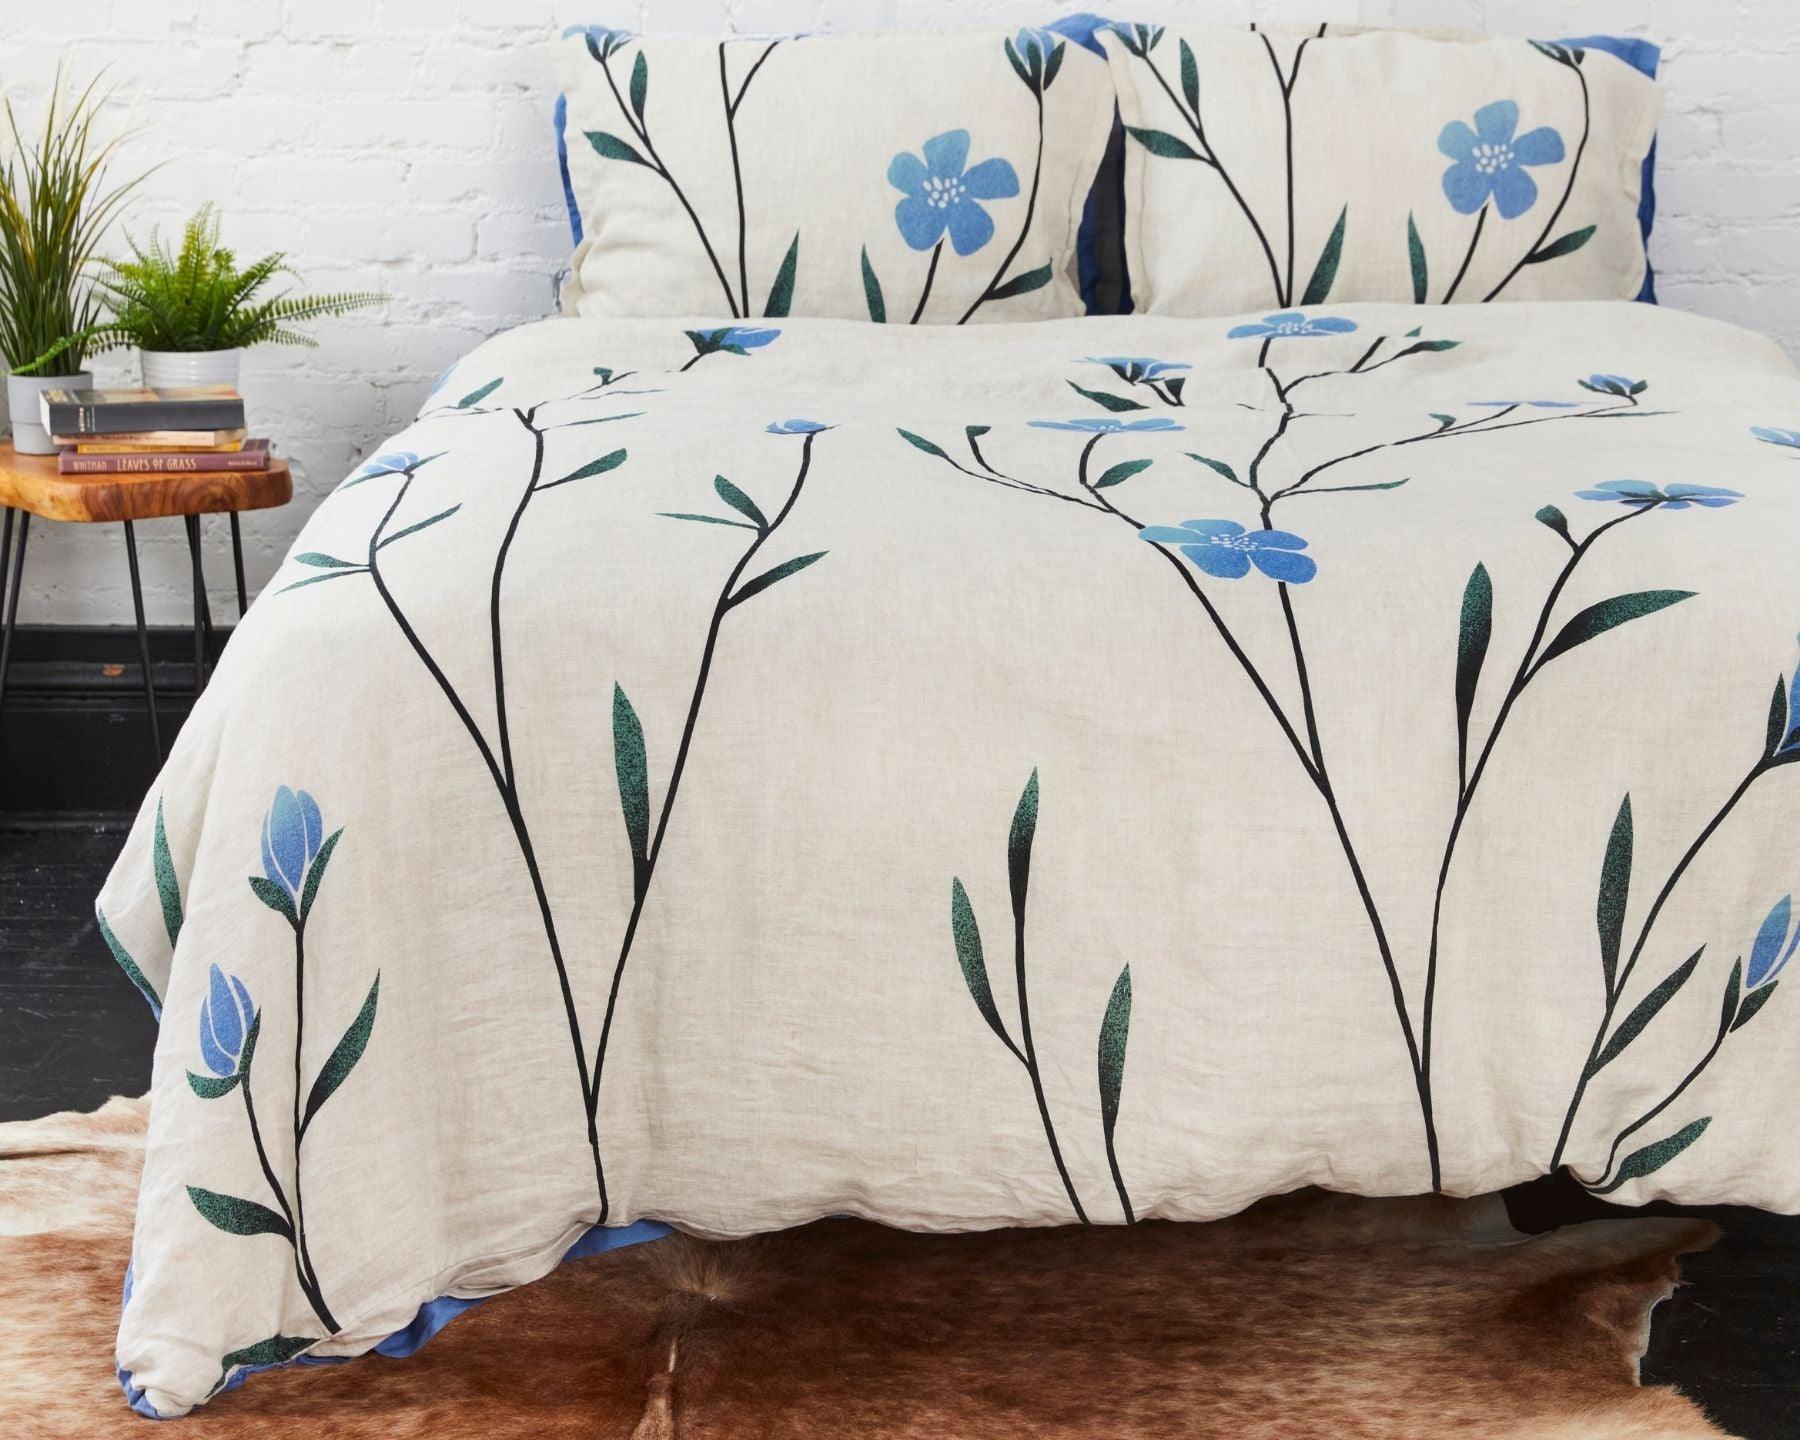 Organic European linen duvet cover on natural flax linen with Scandinavian floral design featuring blue flowers 